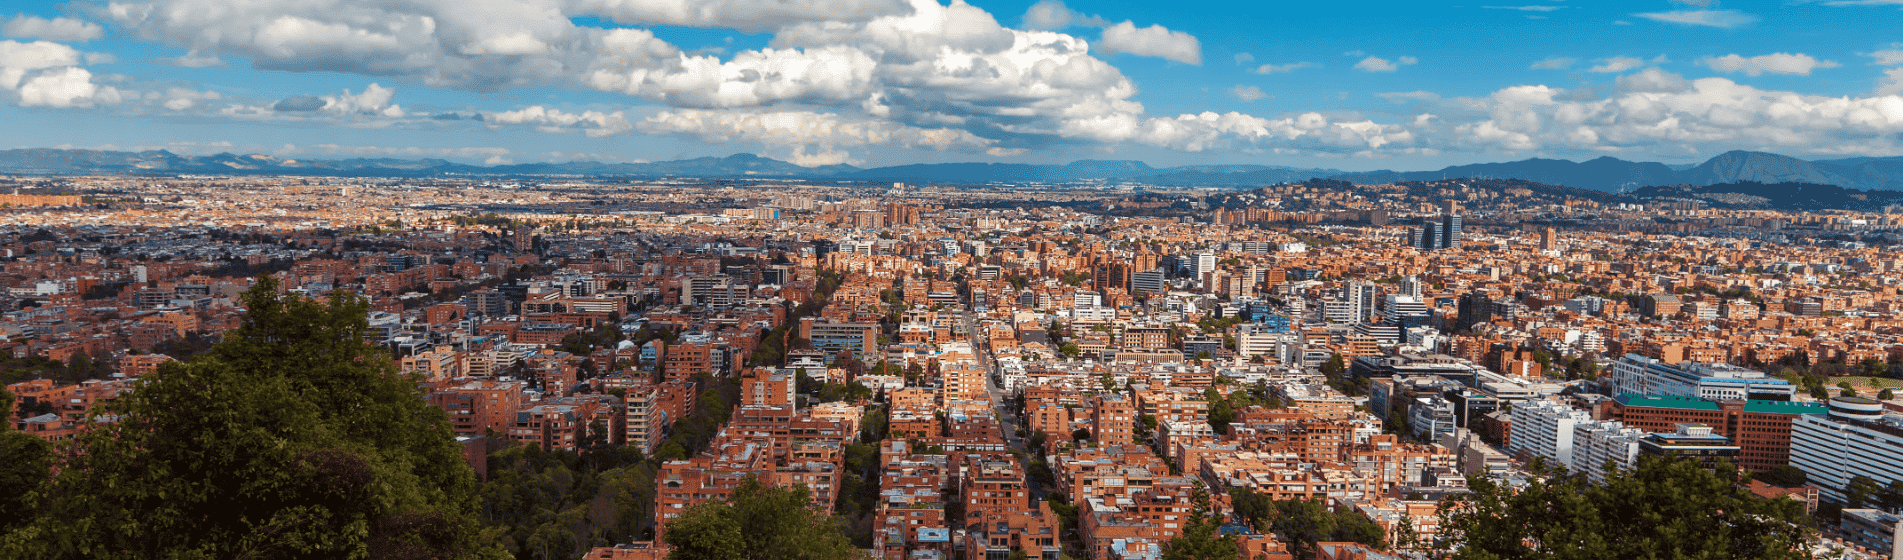 Medellin Colombia real estate